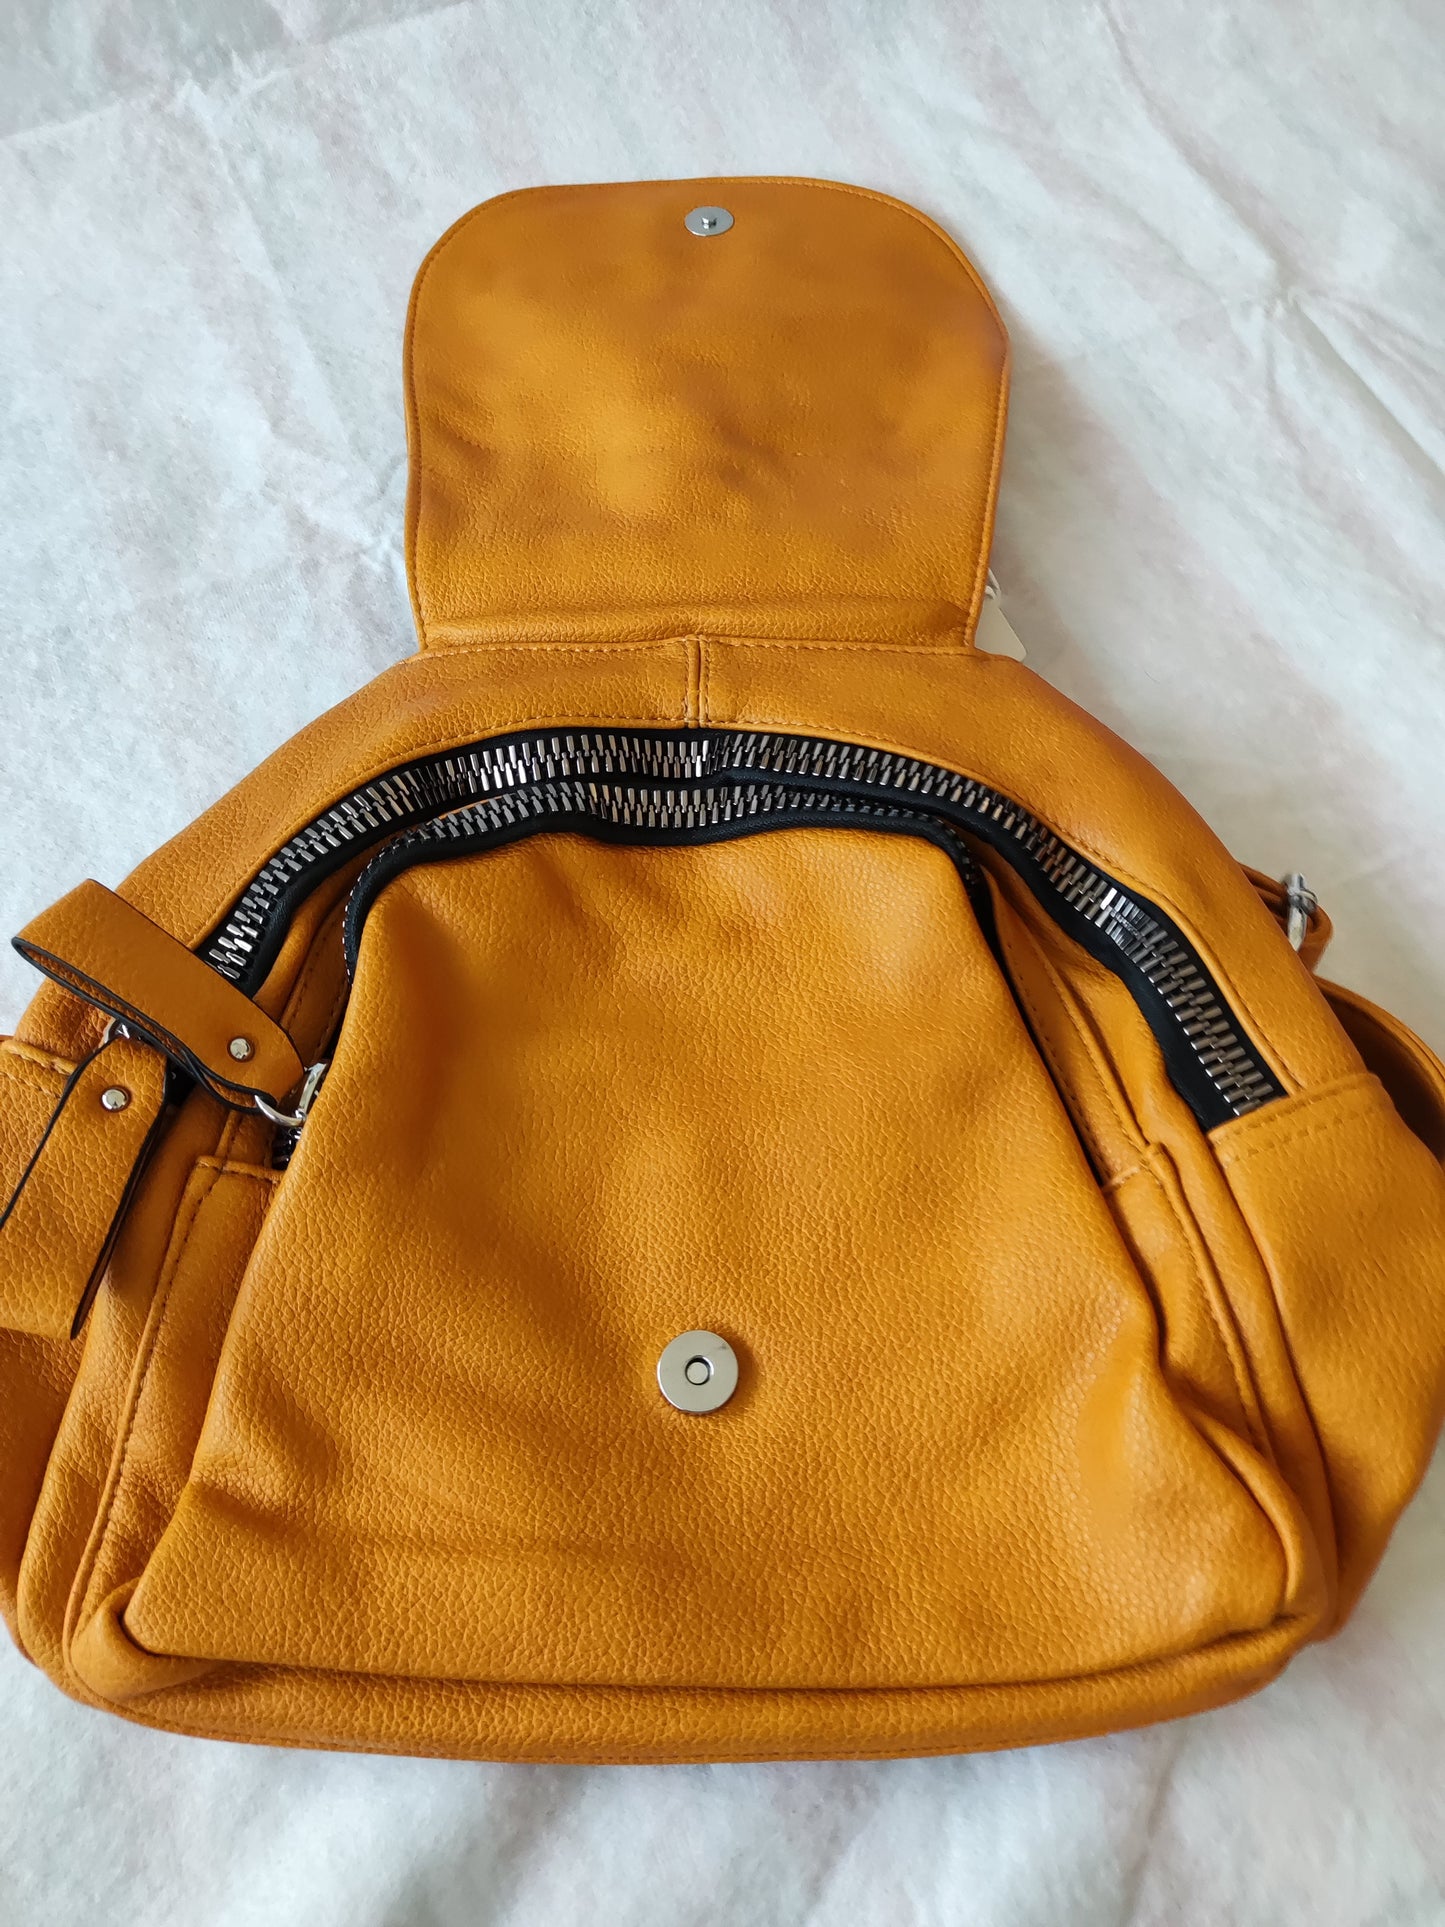 b01 - backpack